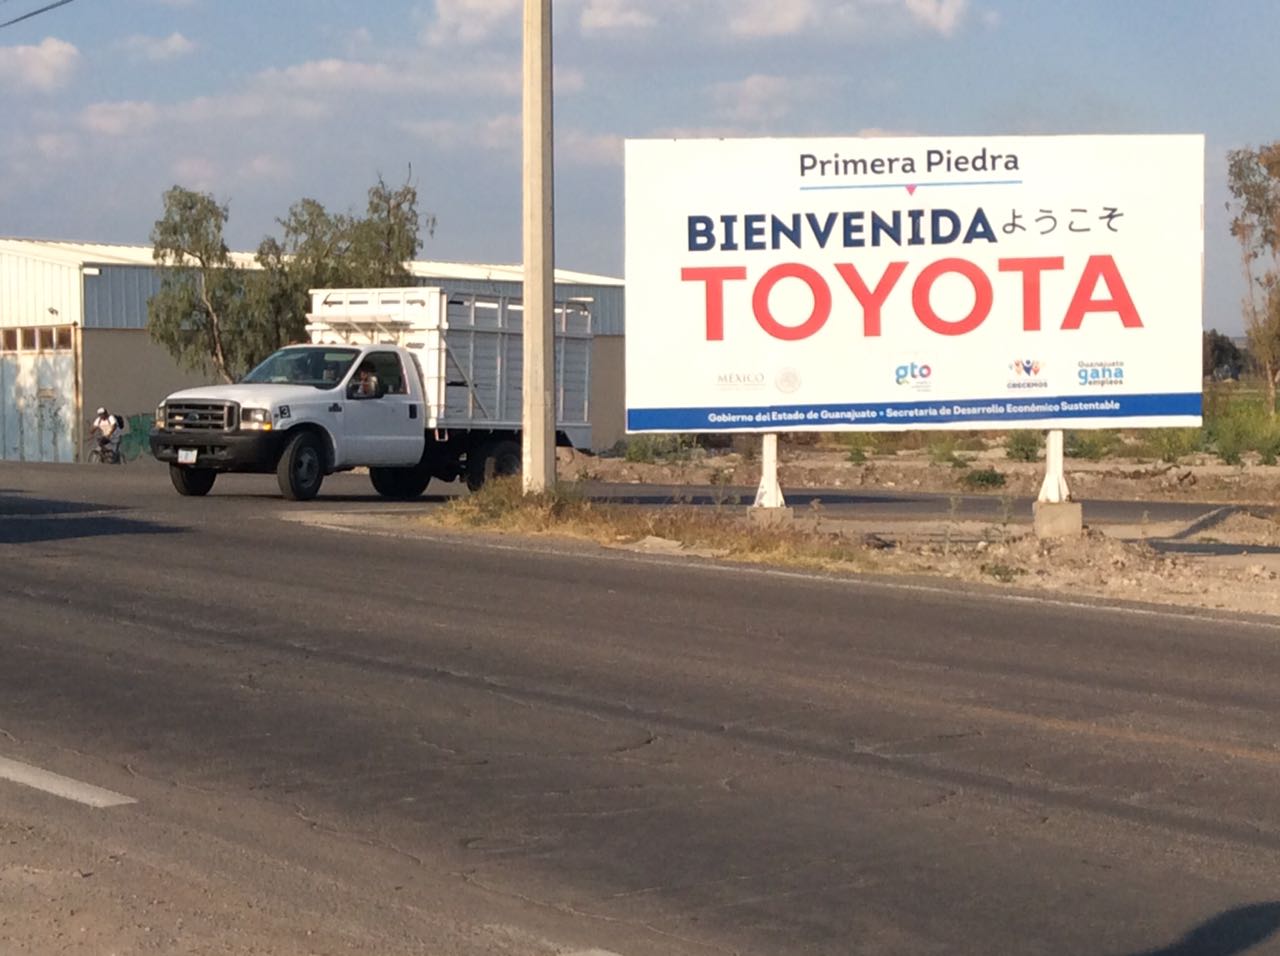 Cluster Industrial - Toyota adelanta para 2019 la apertura de su planta en Guanajuato 